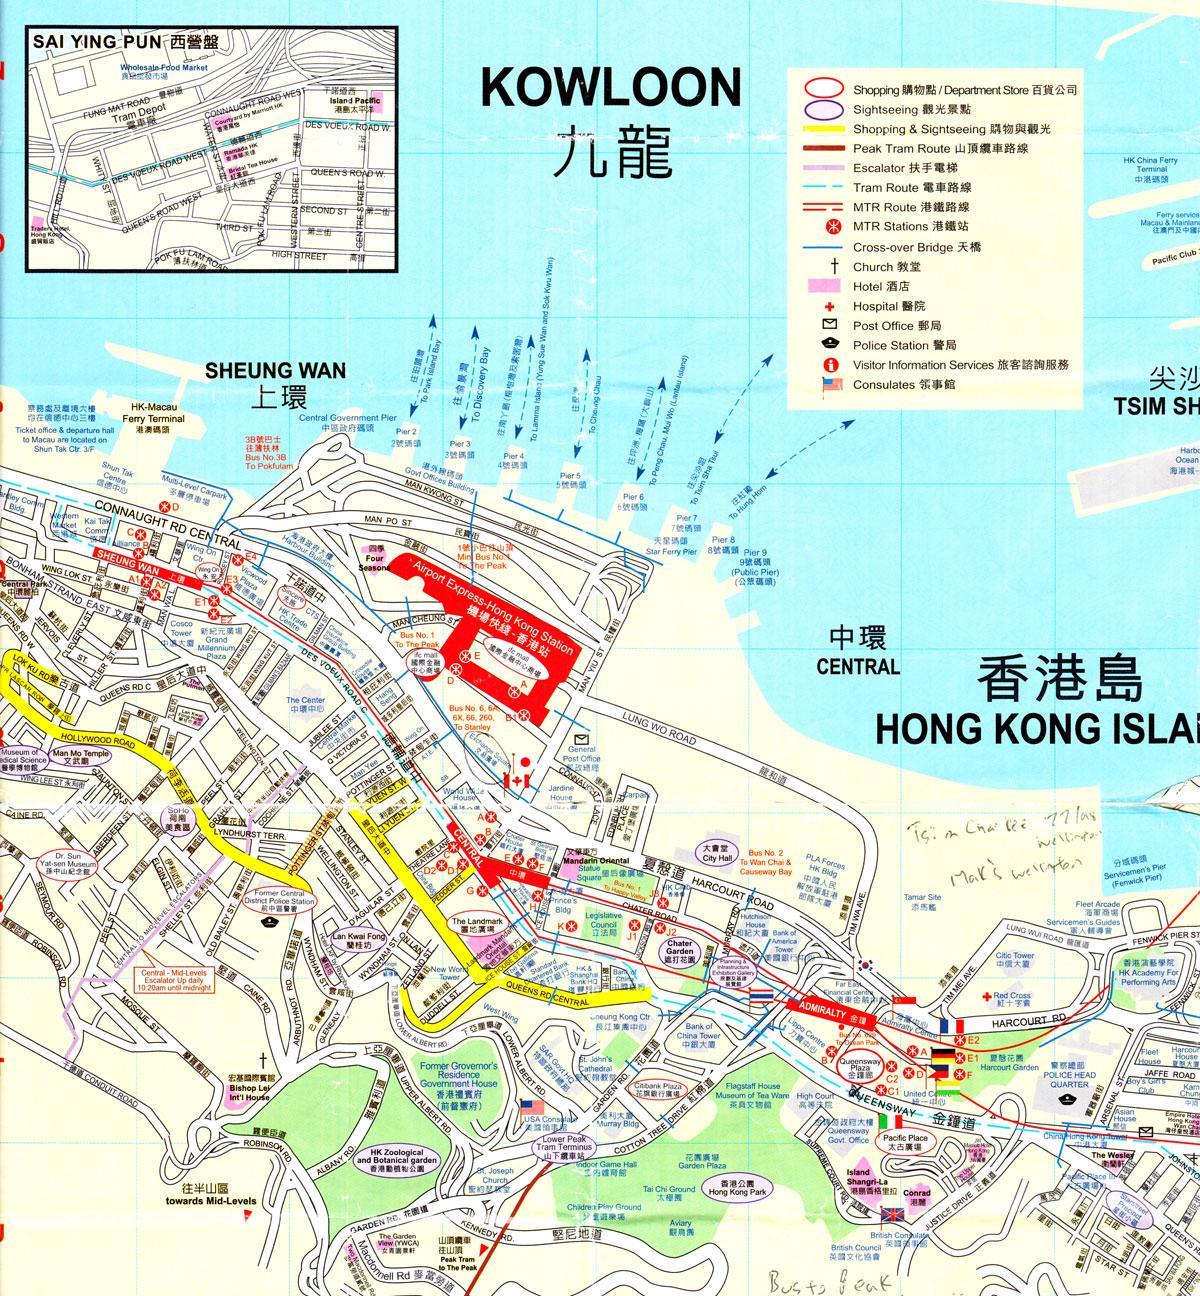 के बंदरगाह हांगकांग का नक्शा